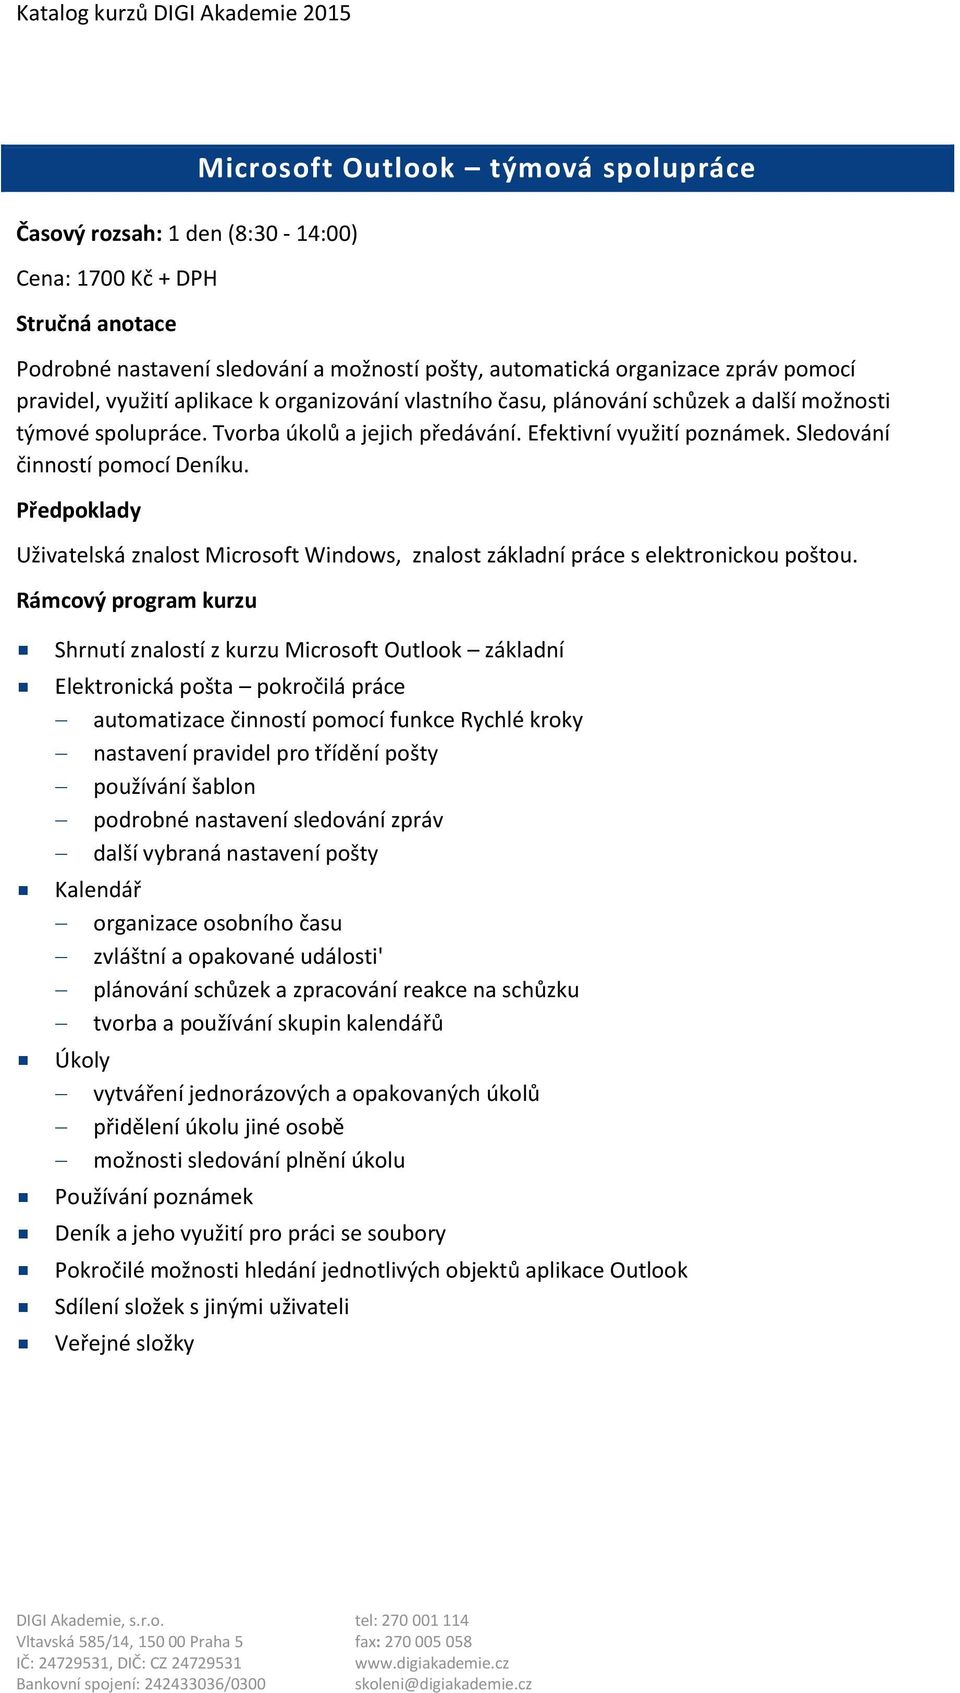 Uživatelská znalost Microsoft Windows, znalost základní práce s elektronickou poštou.